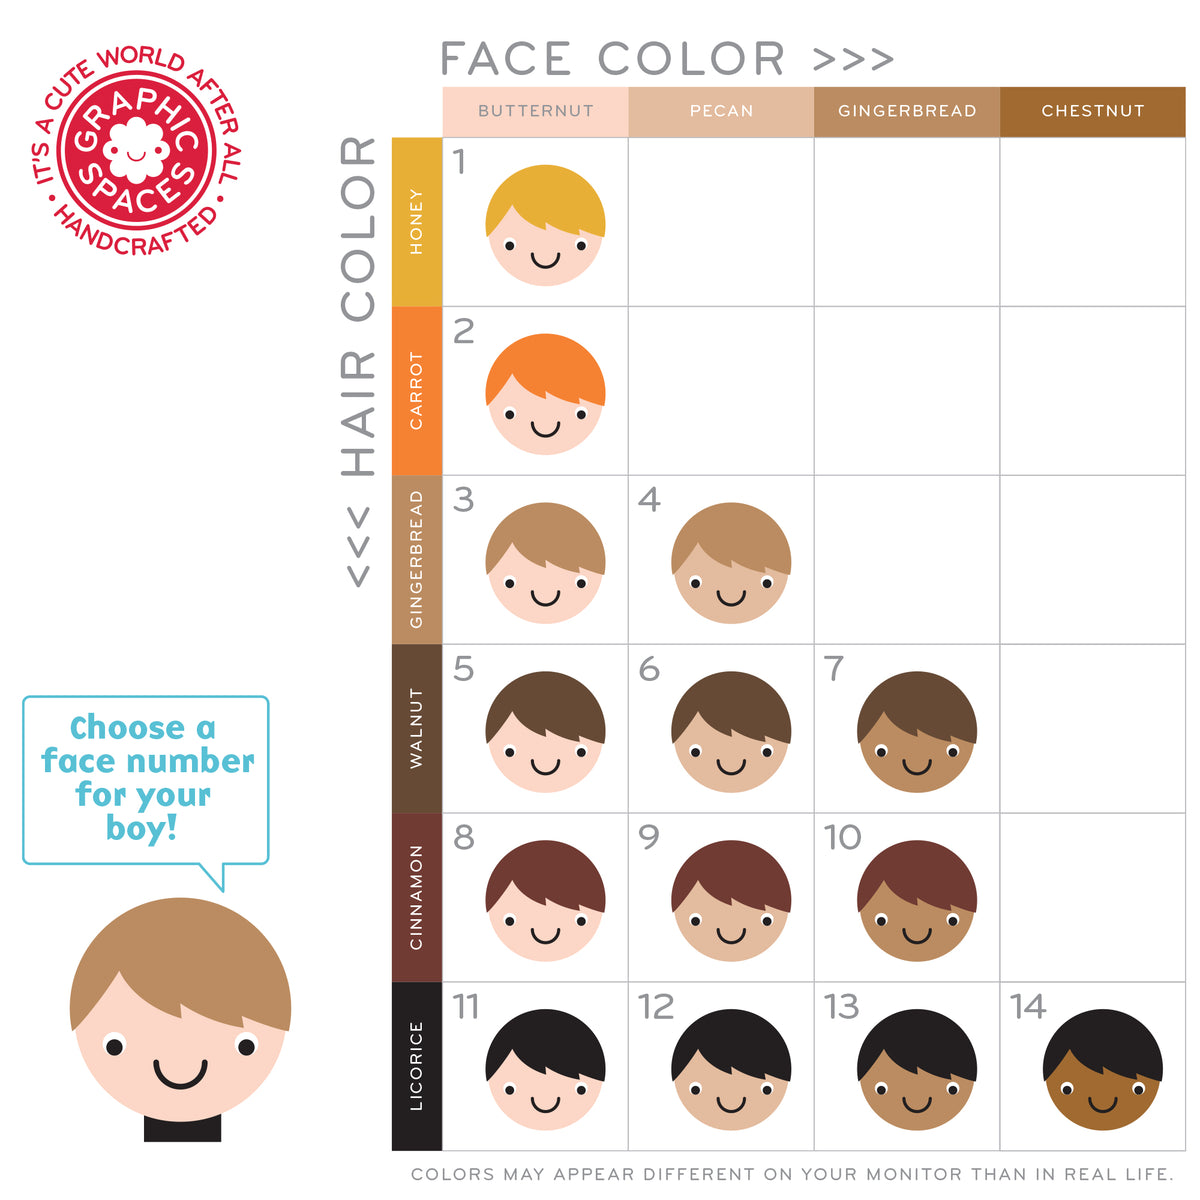 Astronaut boy nursery art print face color chart.